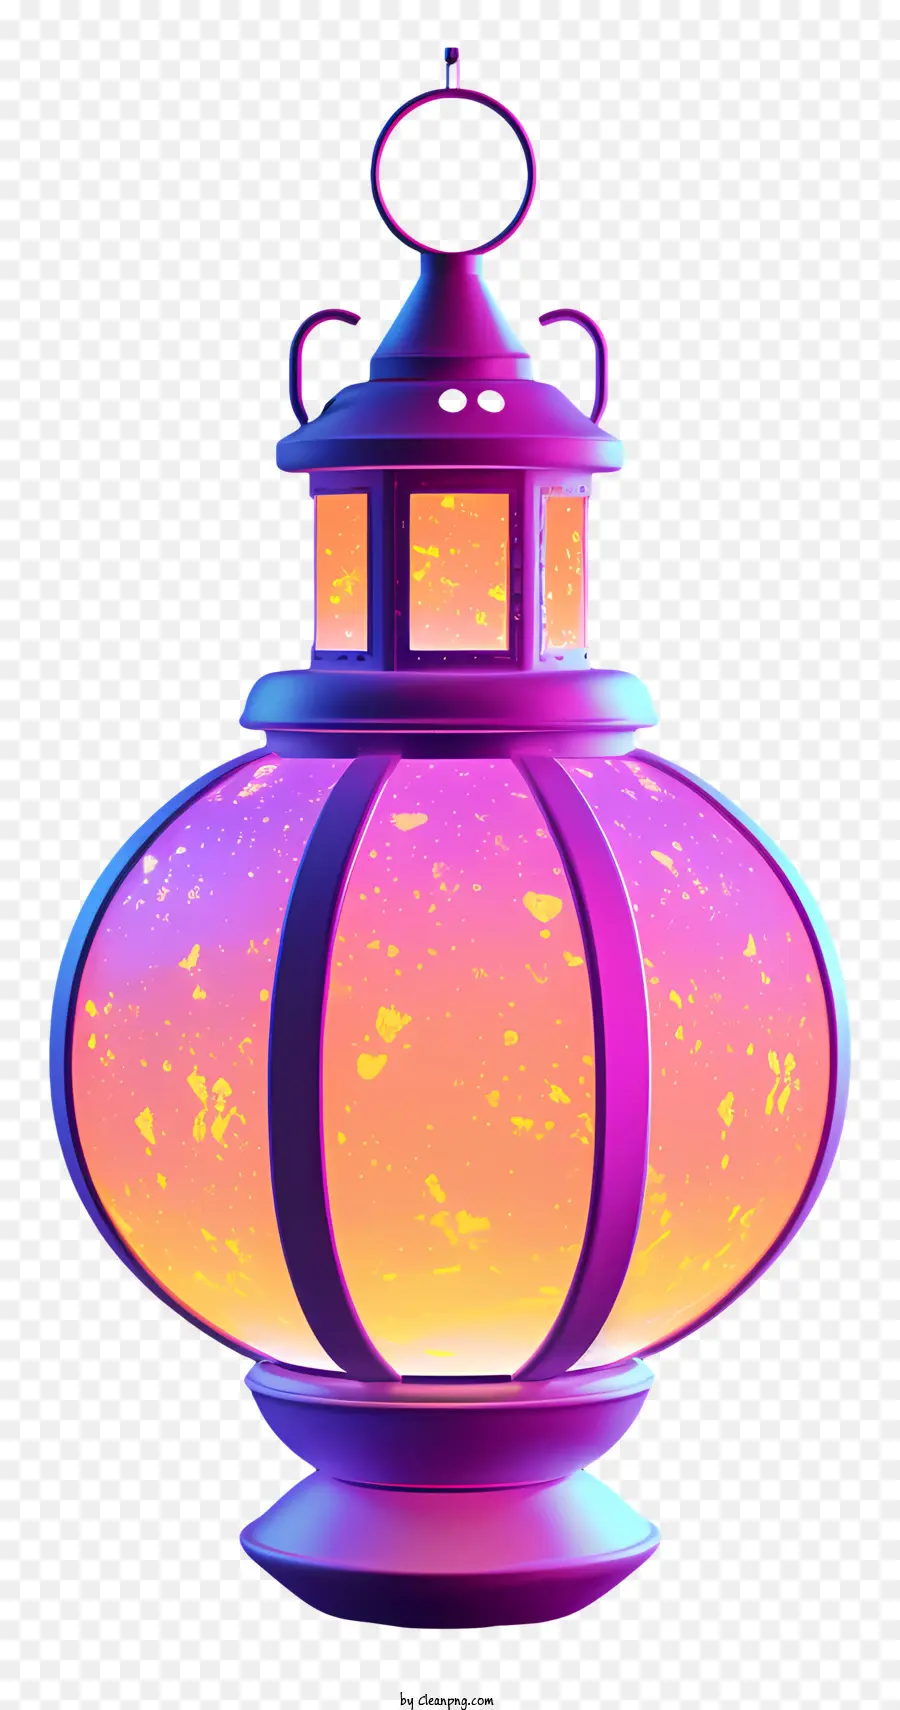 Đèn lồng trang trí đèn lồng màu hồng đèn lồng trong suốt đèn lồng màu cam sáng màu cam Đèn lồng độc đáo - Đèn lồng màu hồng với ánh sáng màu cam, trang trí và độc đáo